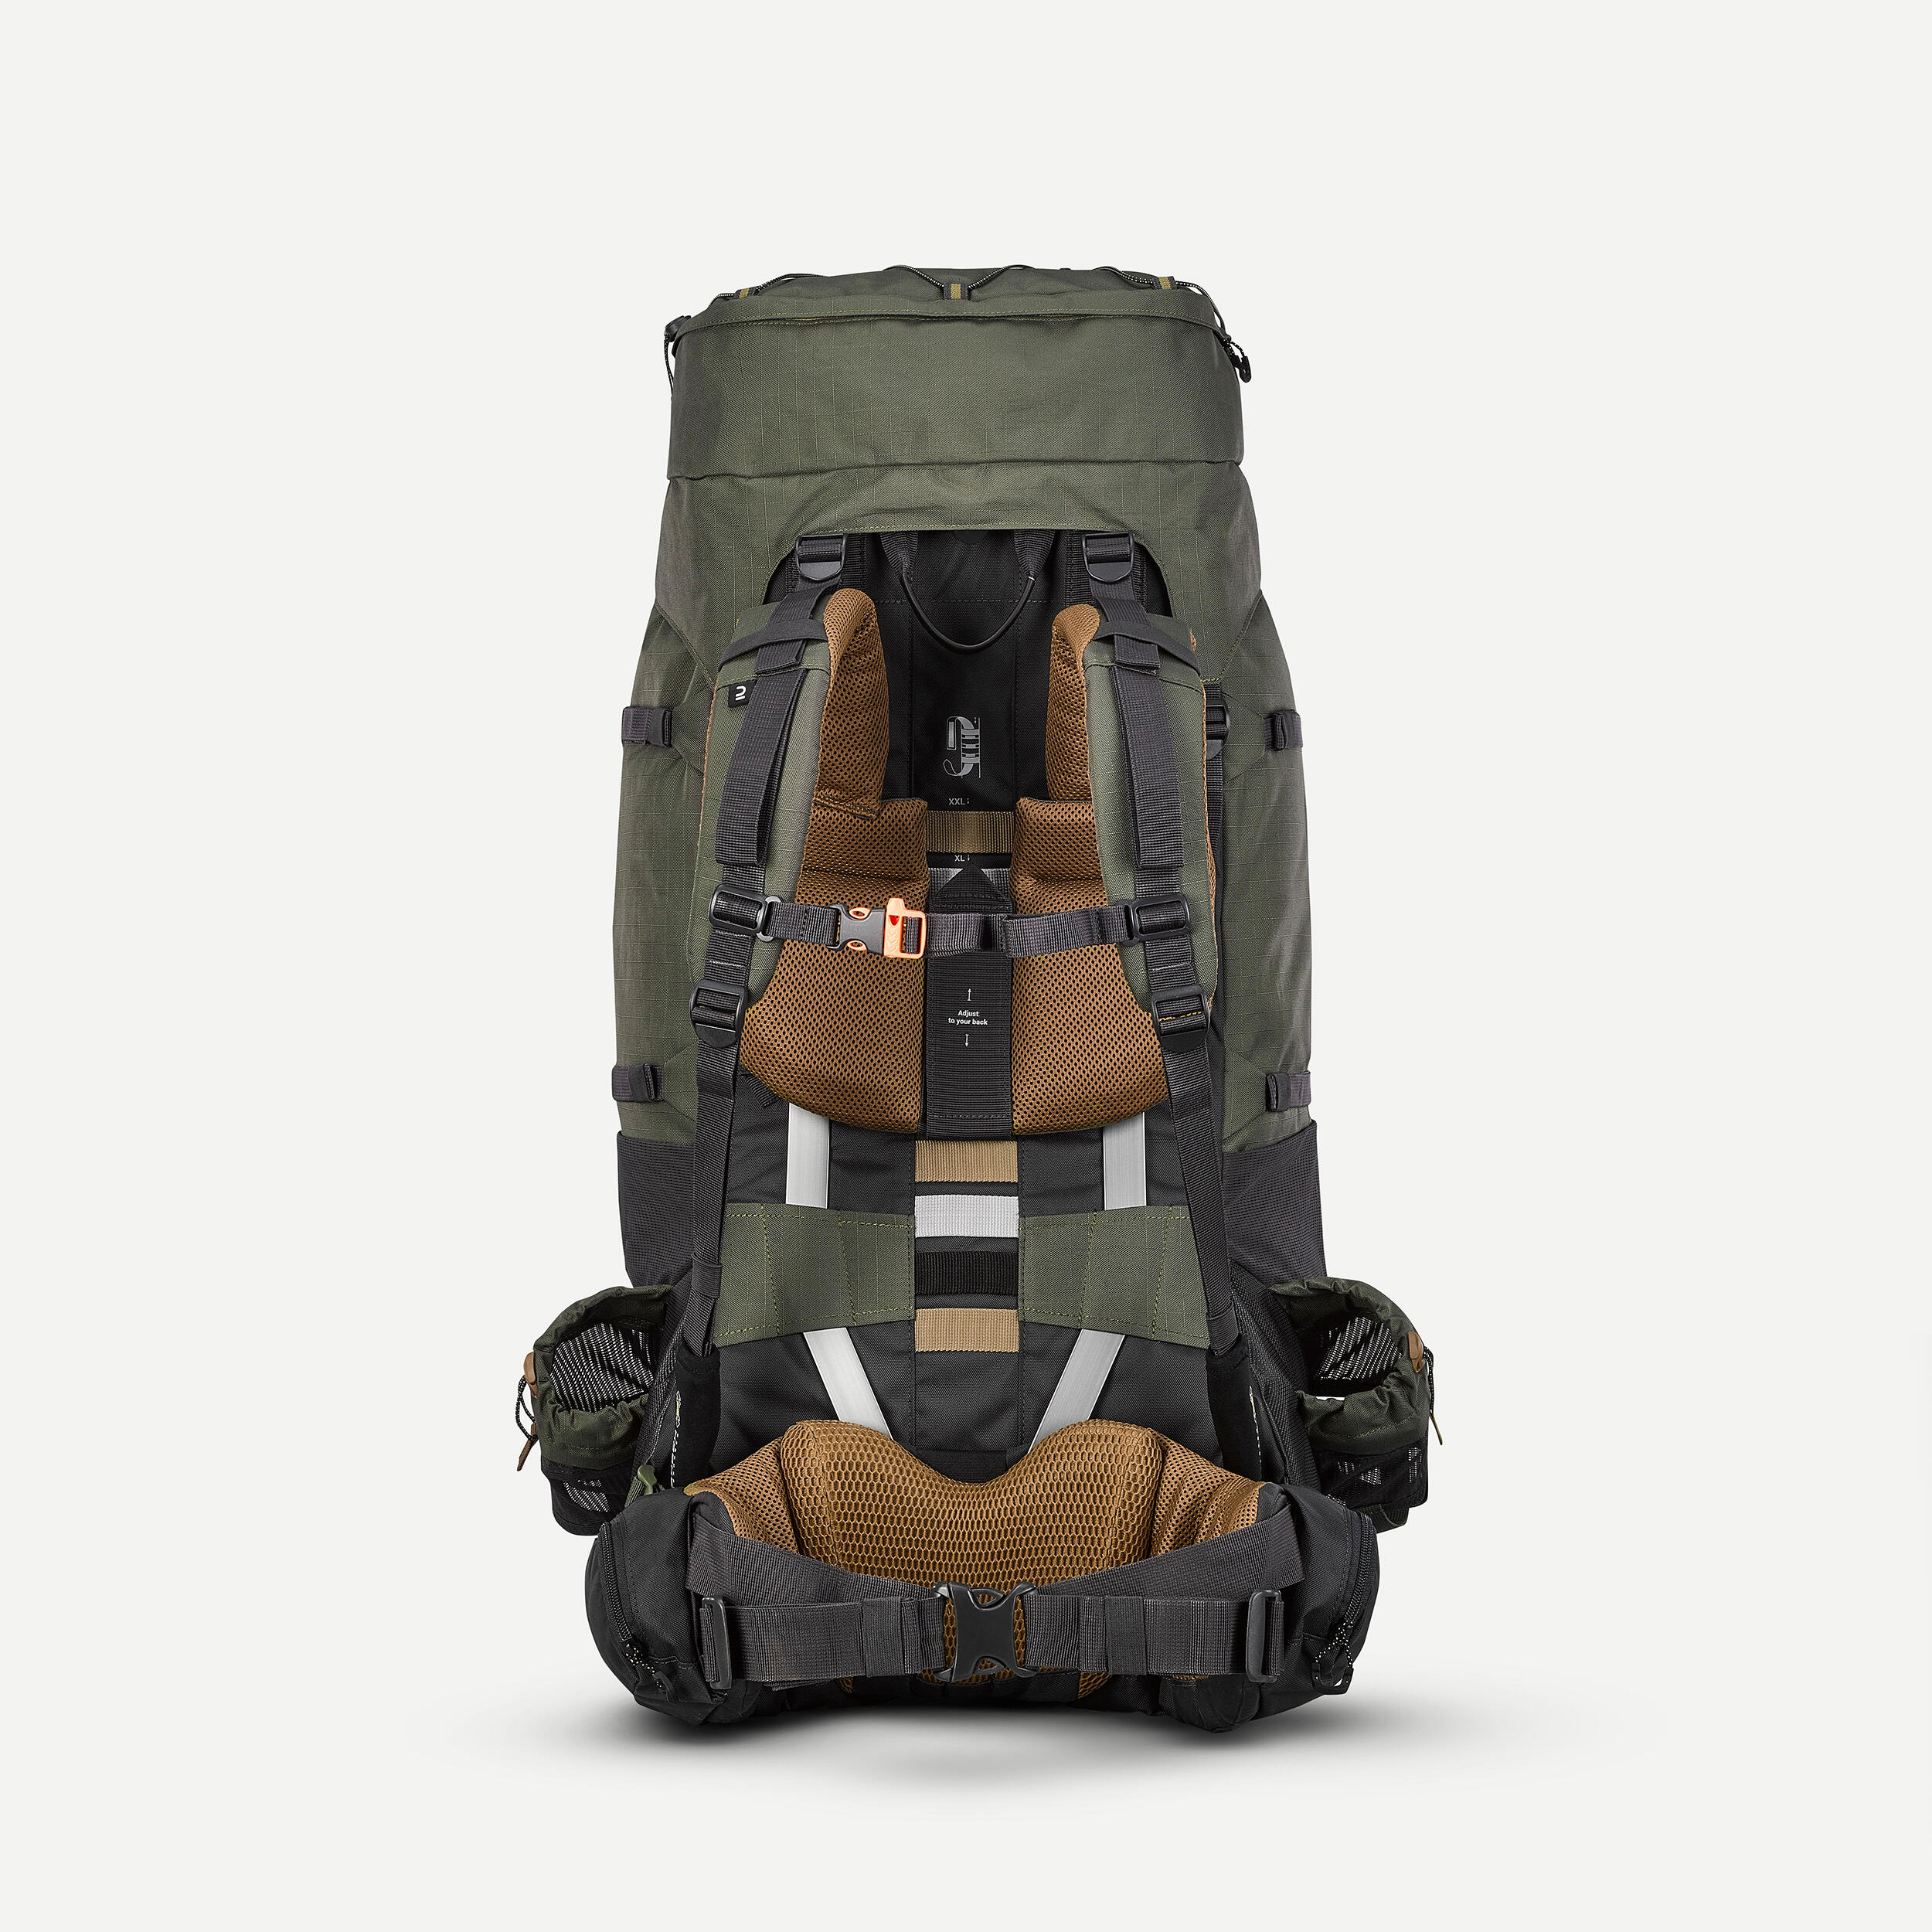 Buy SKYSPER Small Hiking Backpack, 20L Lightweight Travel Backpacks Hiking  Daypack Rucksack Women Men for Trekking Backpacking Outdoor Sports Online  at desertcartINDIA